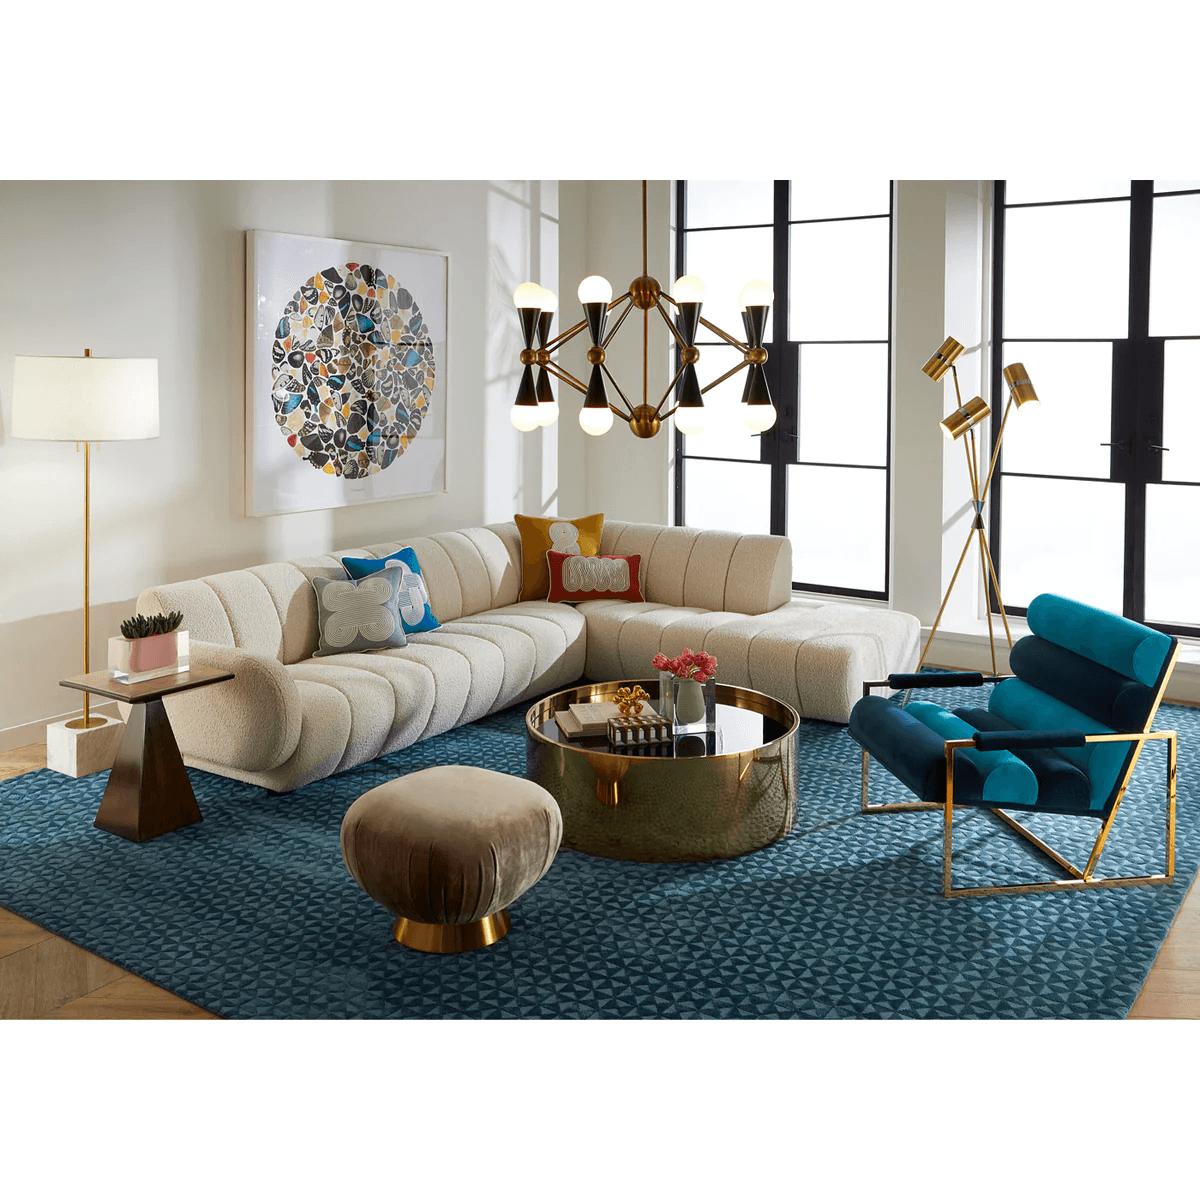 Jonathan Adler Jonathan Adler Samt-Sessel Lounge Chair Goldfinger | Rialto Navy & Rialto Turquoise Codeso Living